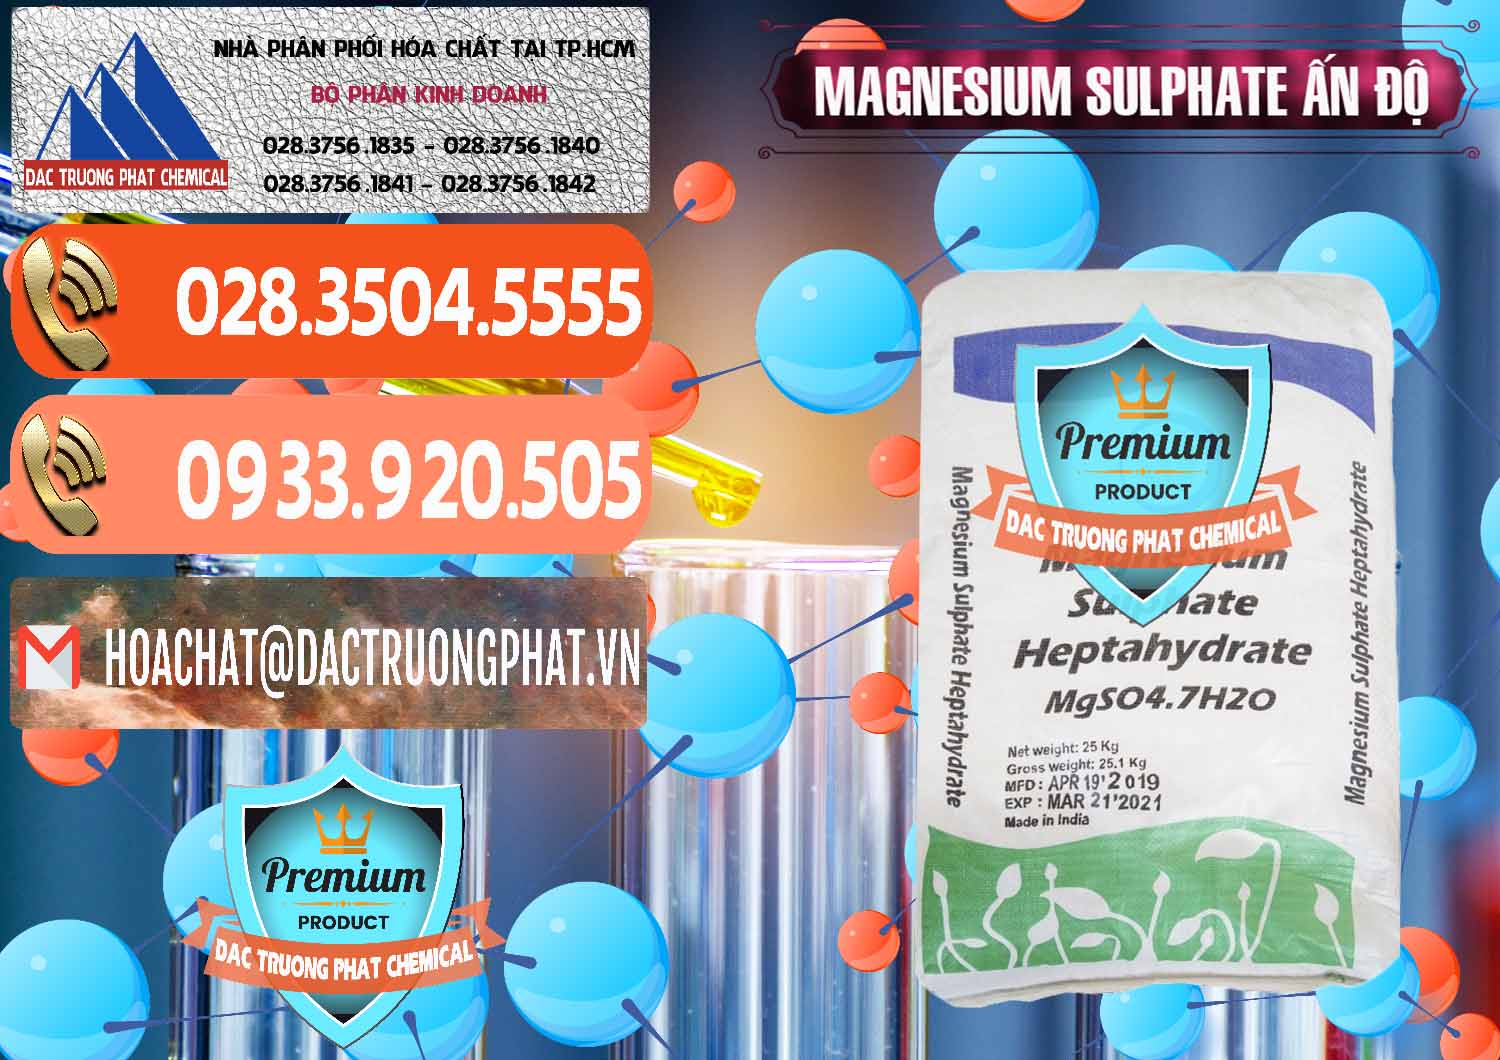 Phân phối & bán MGSO4.7H2O – Magnesium Sulphate Heptahydrate Ấn Độ India - 0362 - Nơi chuyên cung cấp - bán hóa chất tại TP.HCM - hoachatmientay.com